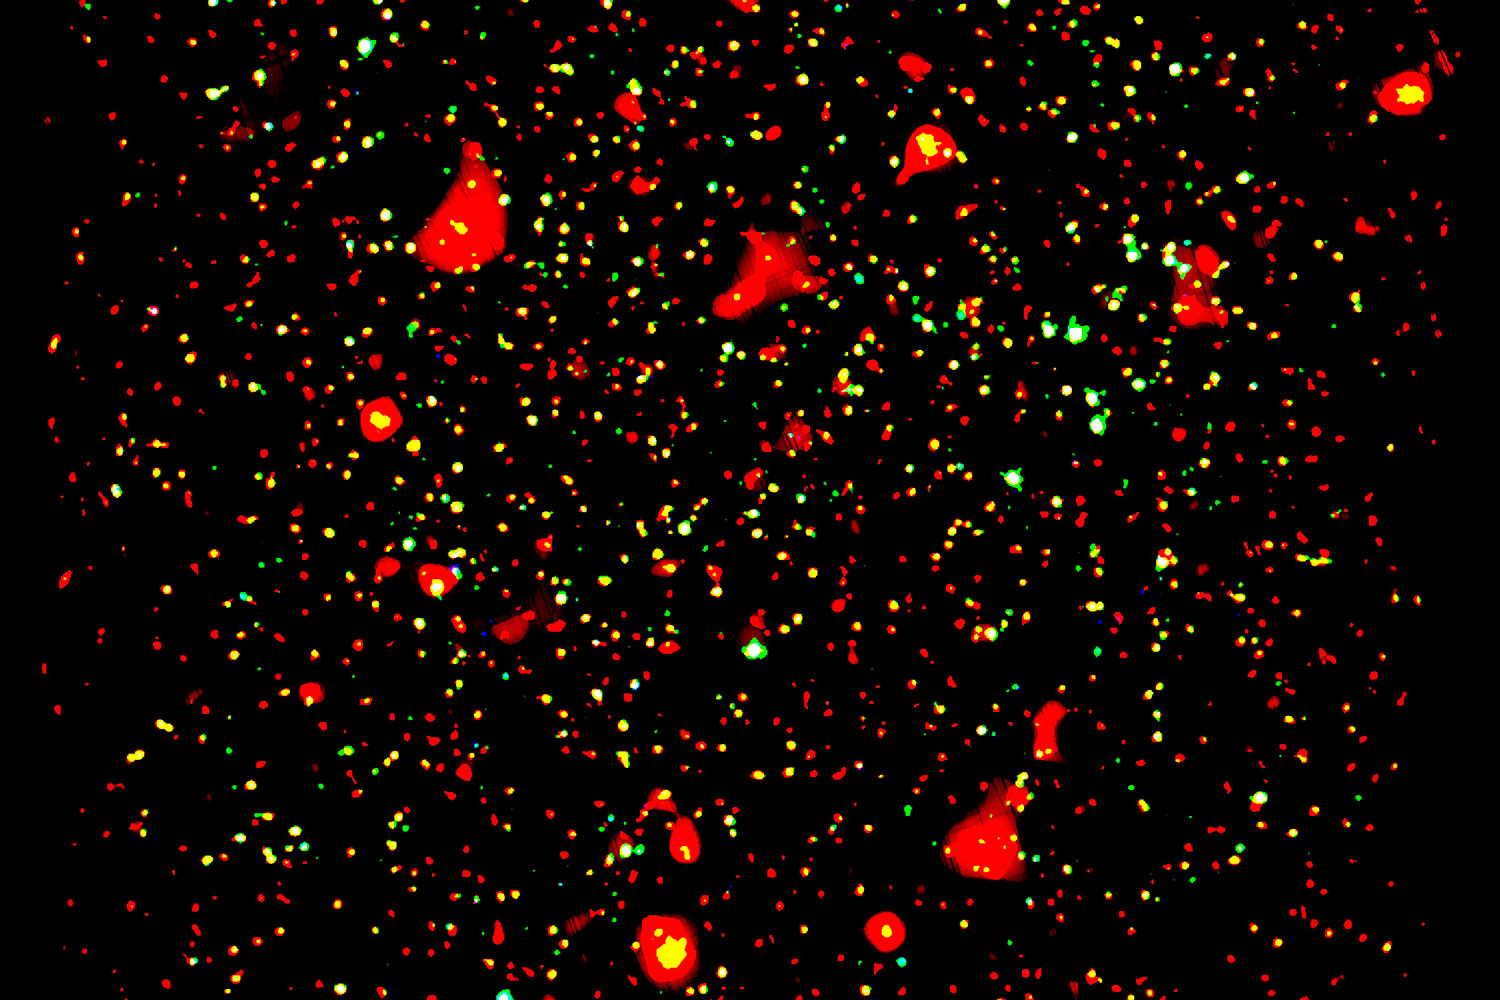 El telescopio XMM-Newton de la ESA capta imágenes de la formación de galaxias